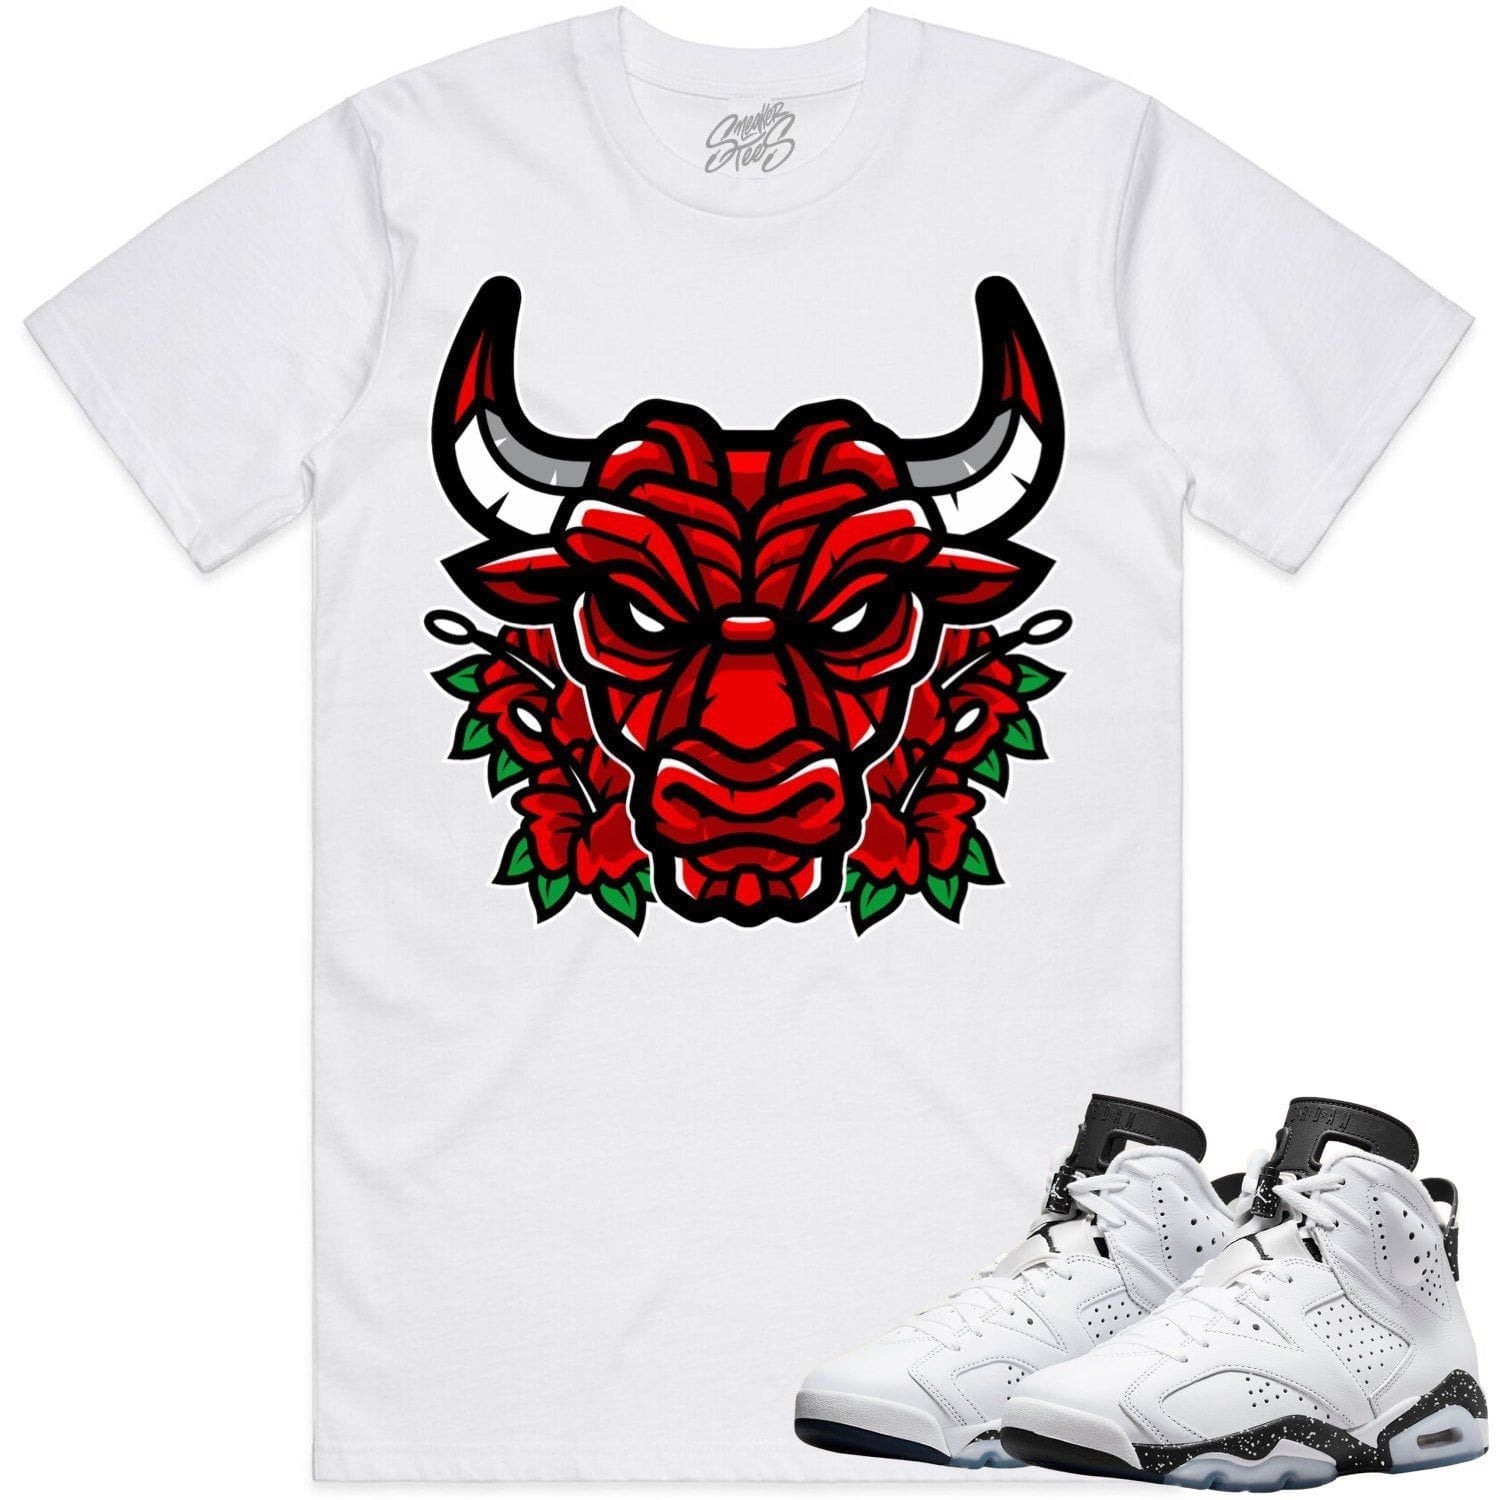 Oreo 6s Shirts - Jordan 6 Reverse Oreo 6s Sneaker Tees - Bully Roses